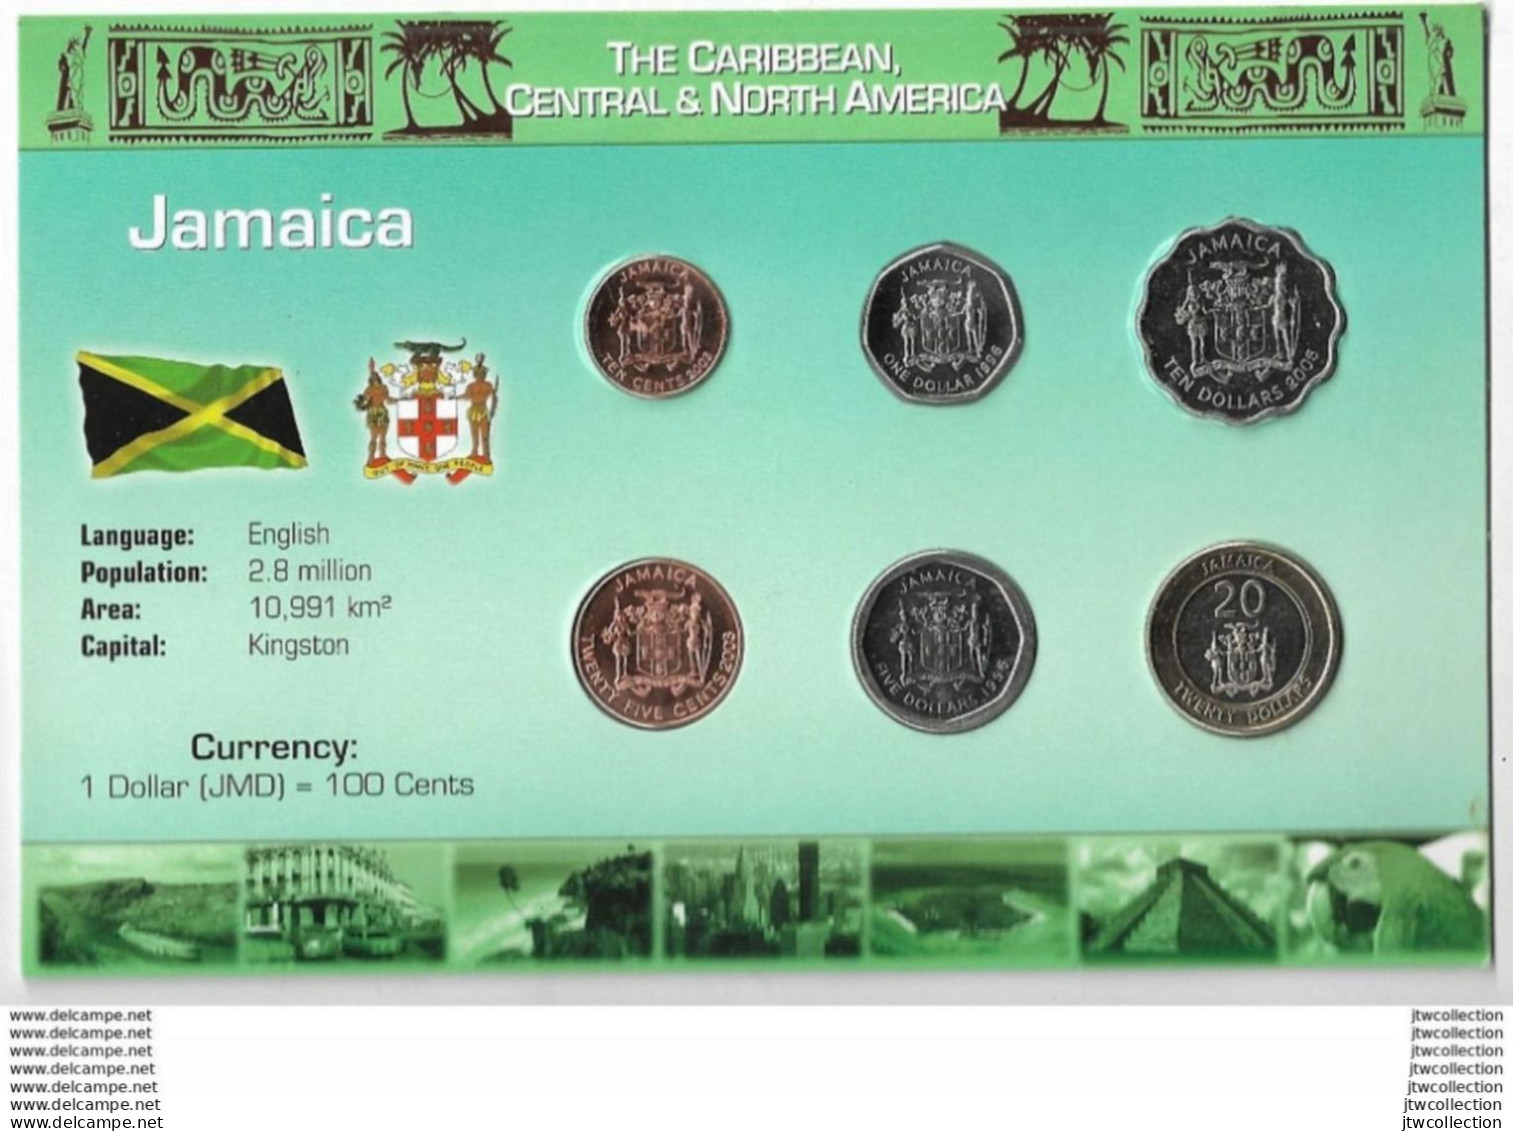 Giamaica - FDC - Jamaica